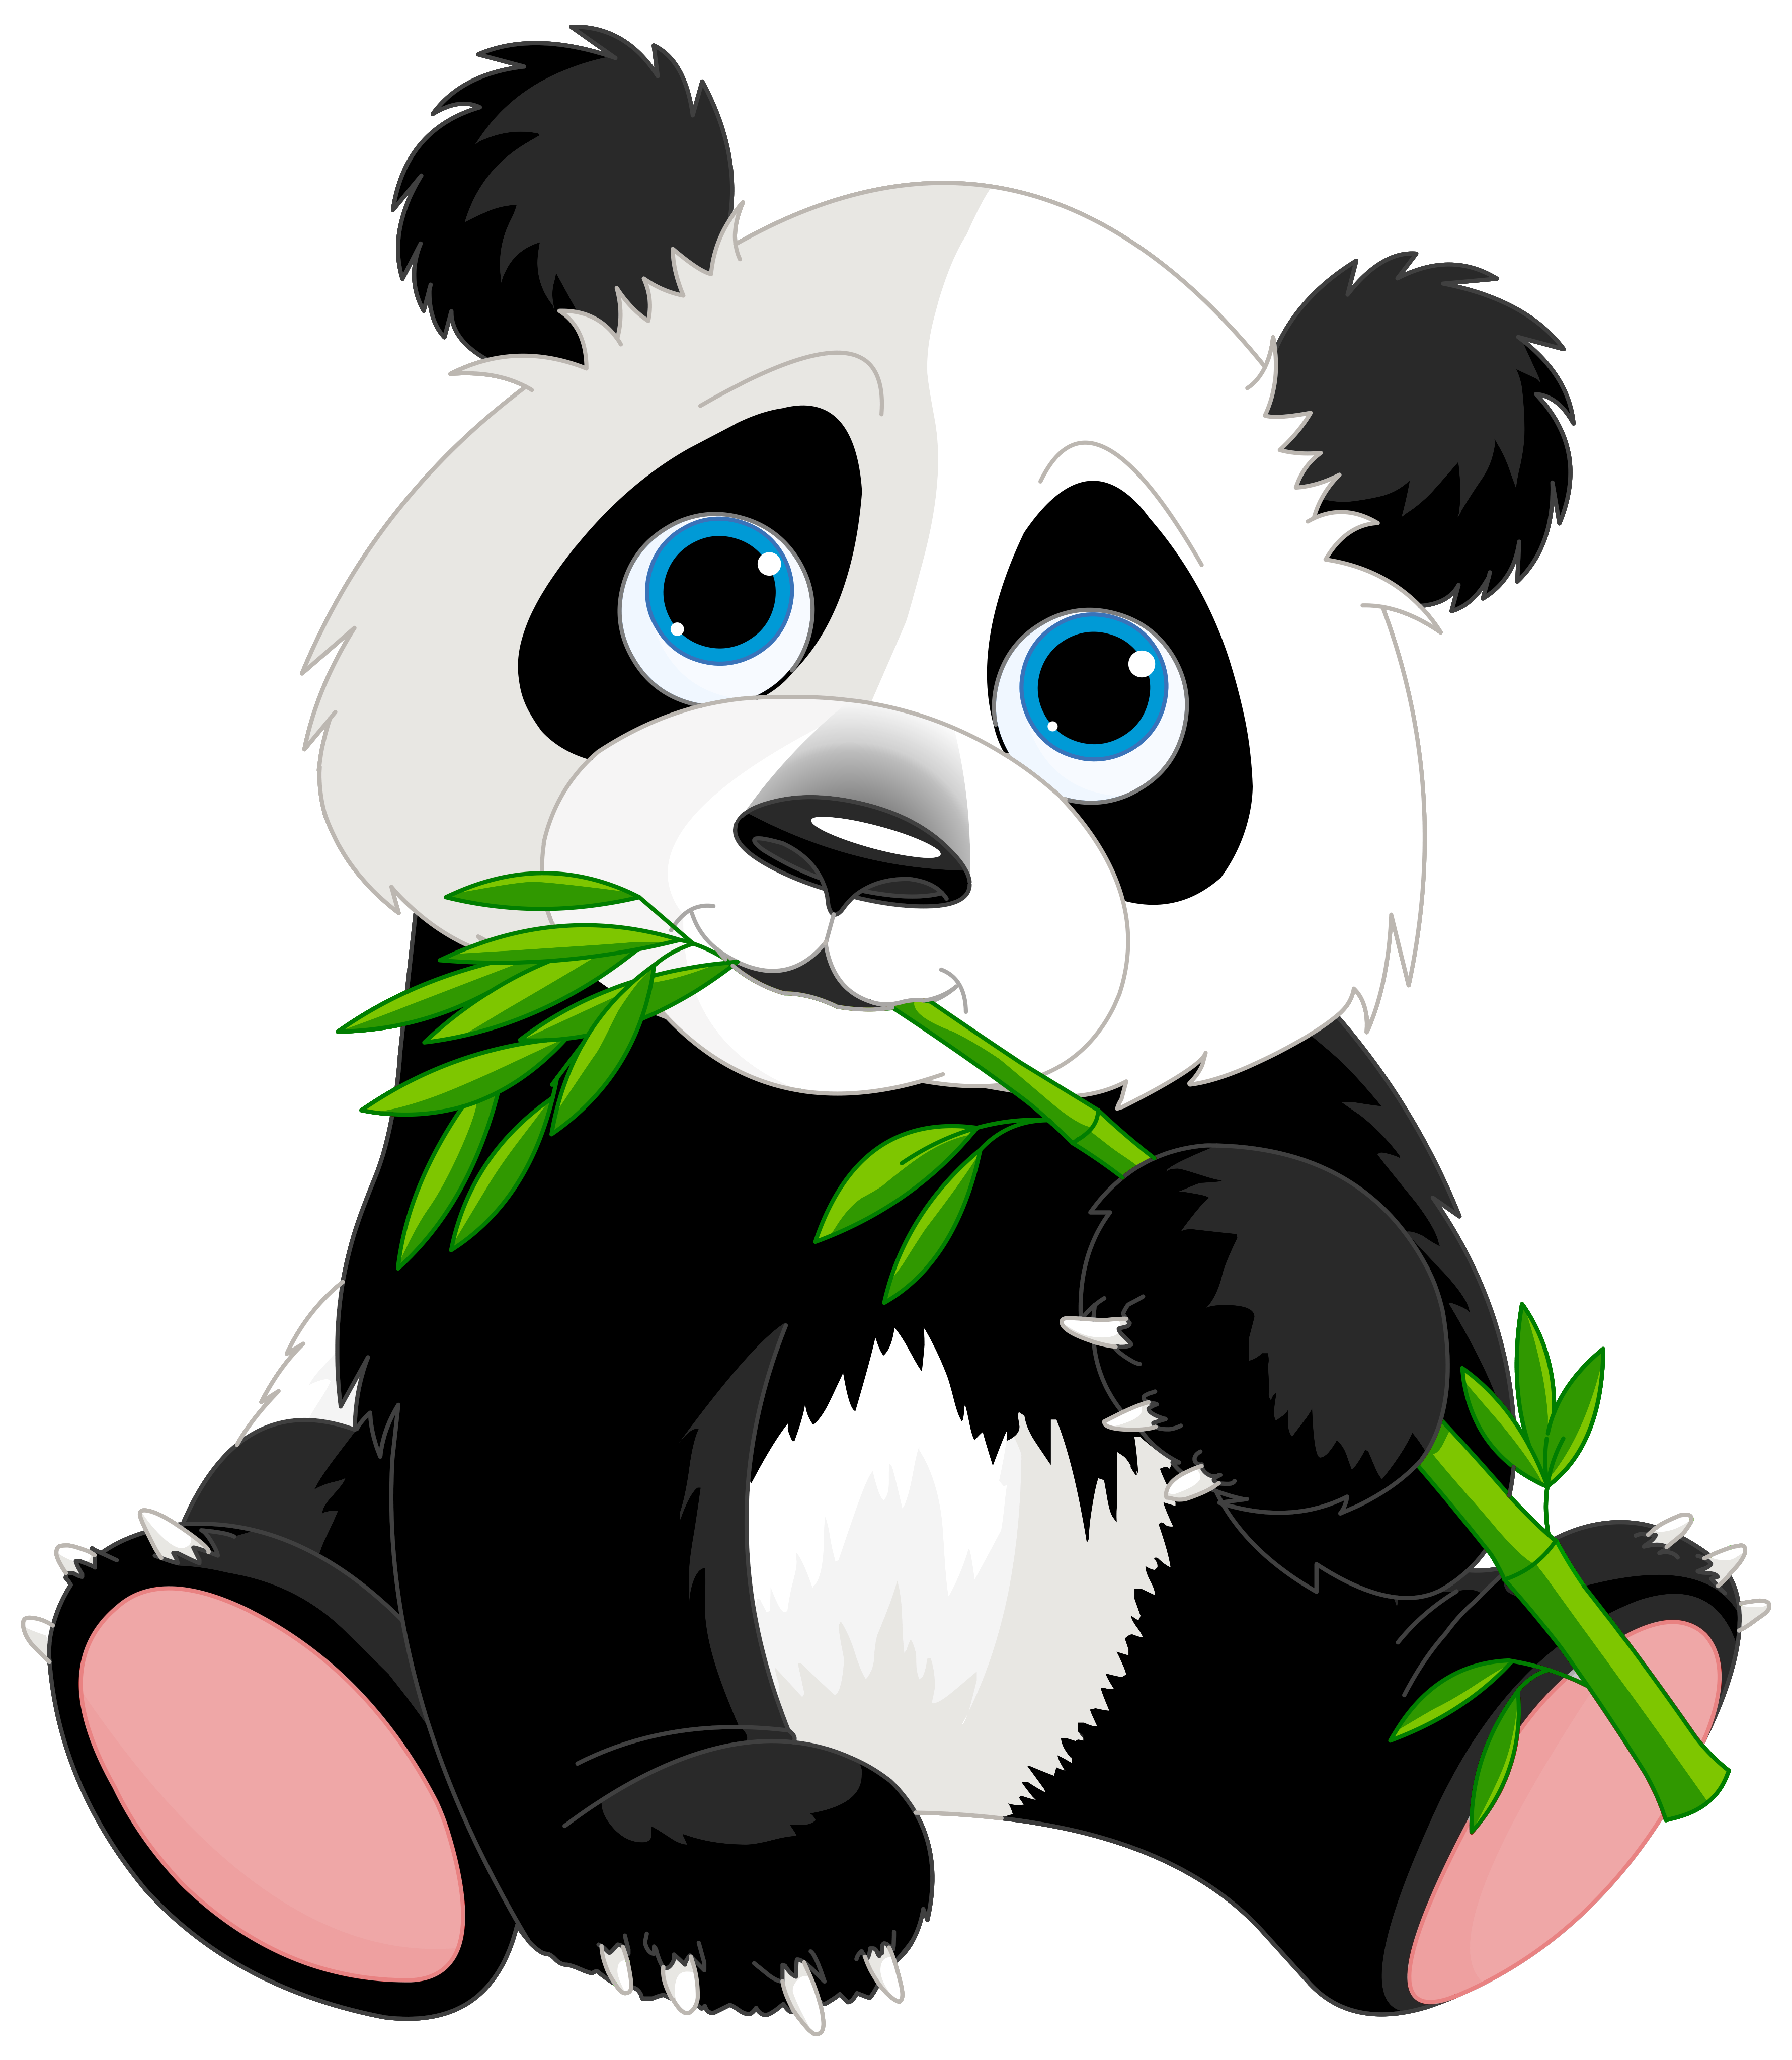 Scrapbook clipart panda bear. Cute cartoon image gallery